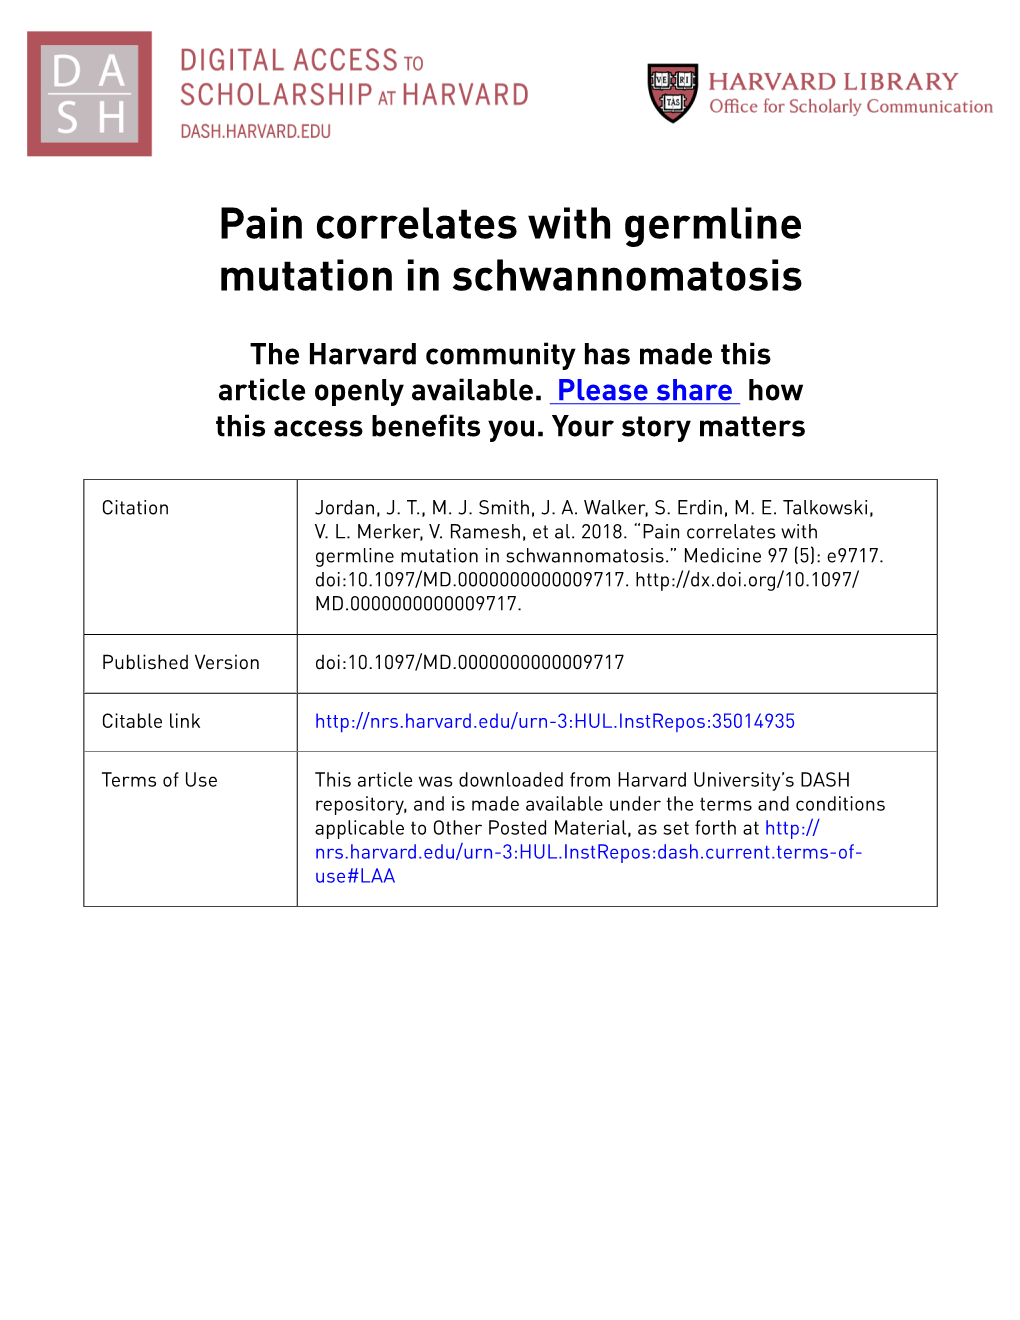 Pain Correlates with Germline Mutation in Schwannomatosis